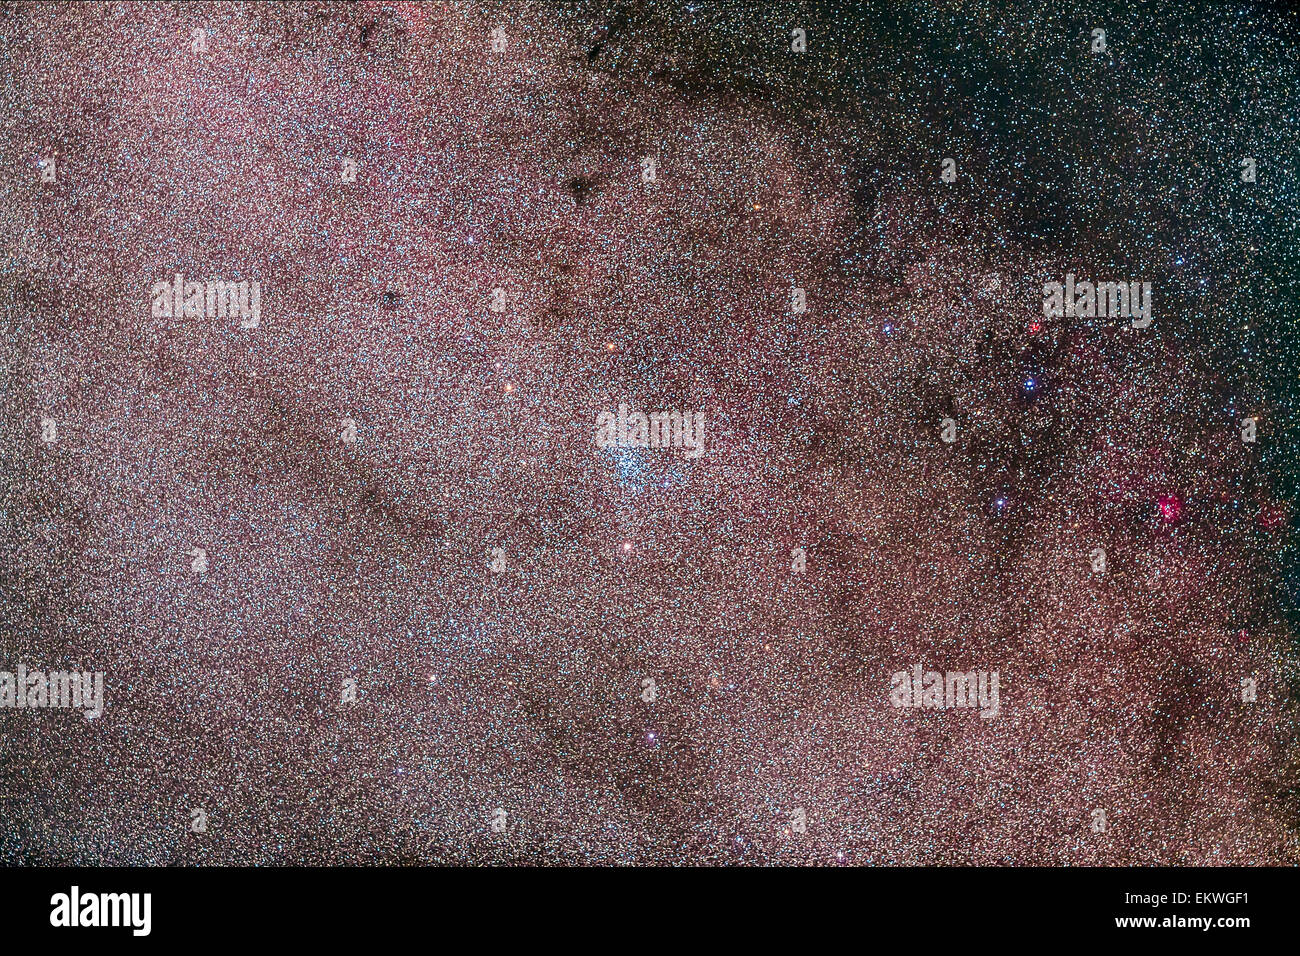 L'amas ouvert NGC 6067 intégré dans la Norma Star nuage dans le sud de la Voie lactée. Le petit à la droite est la nébuleuse Gum 49. Banque D'Images